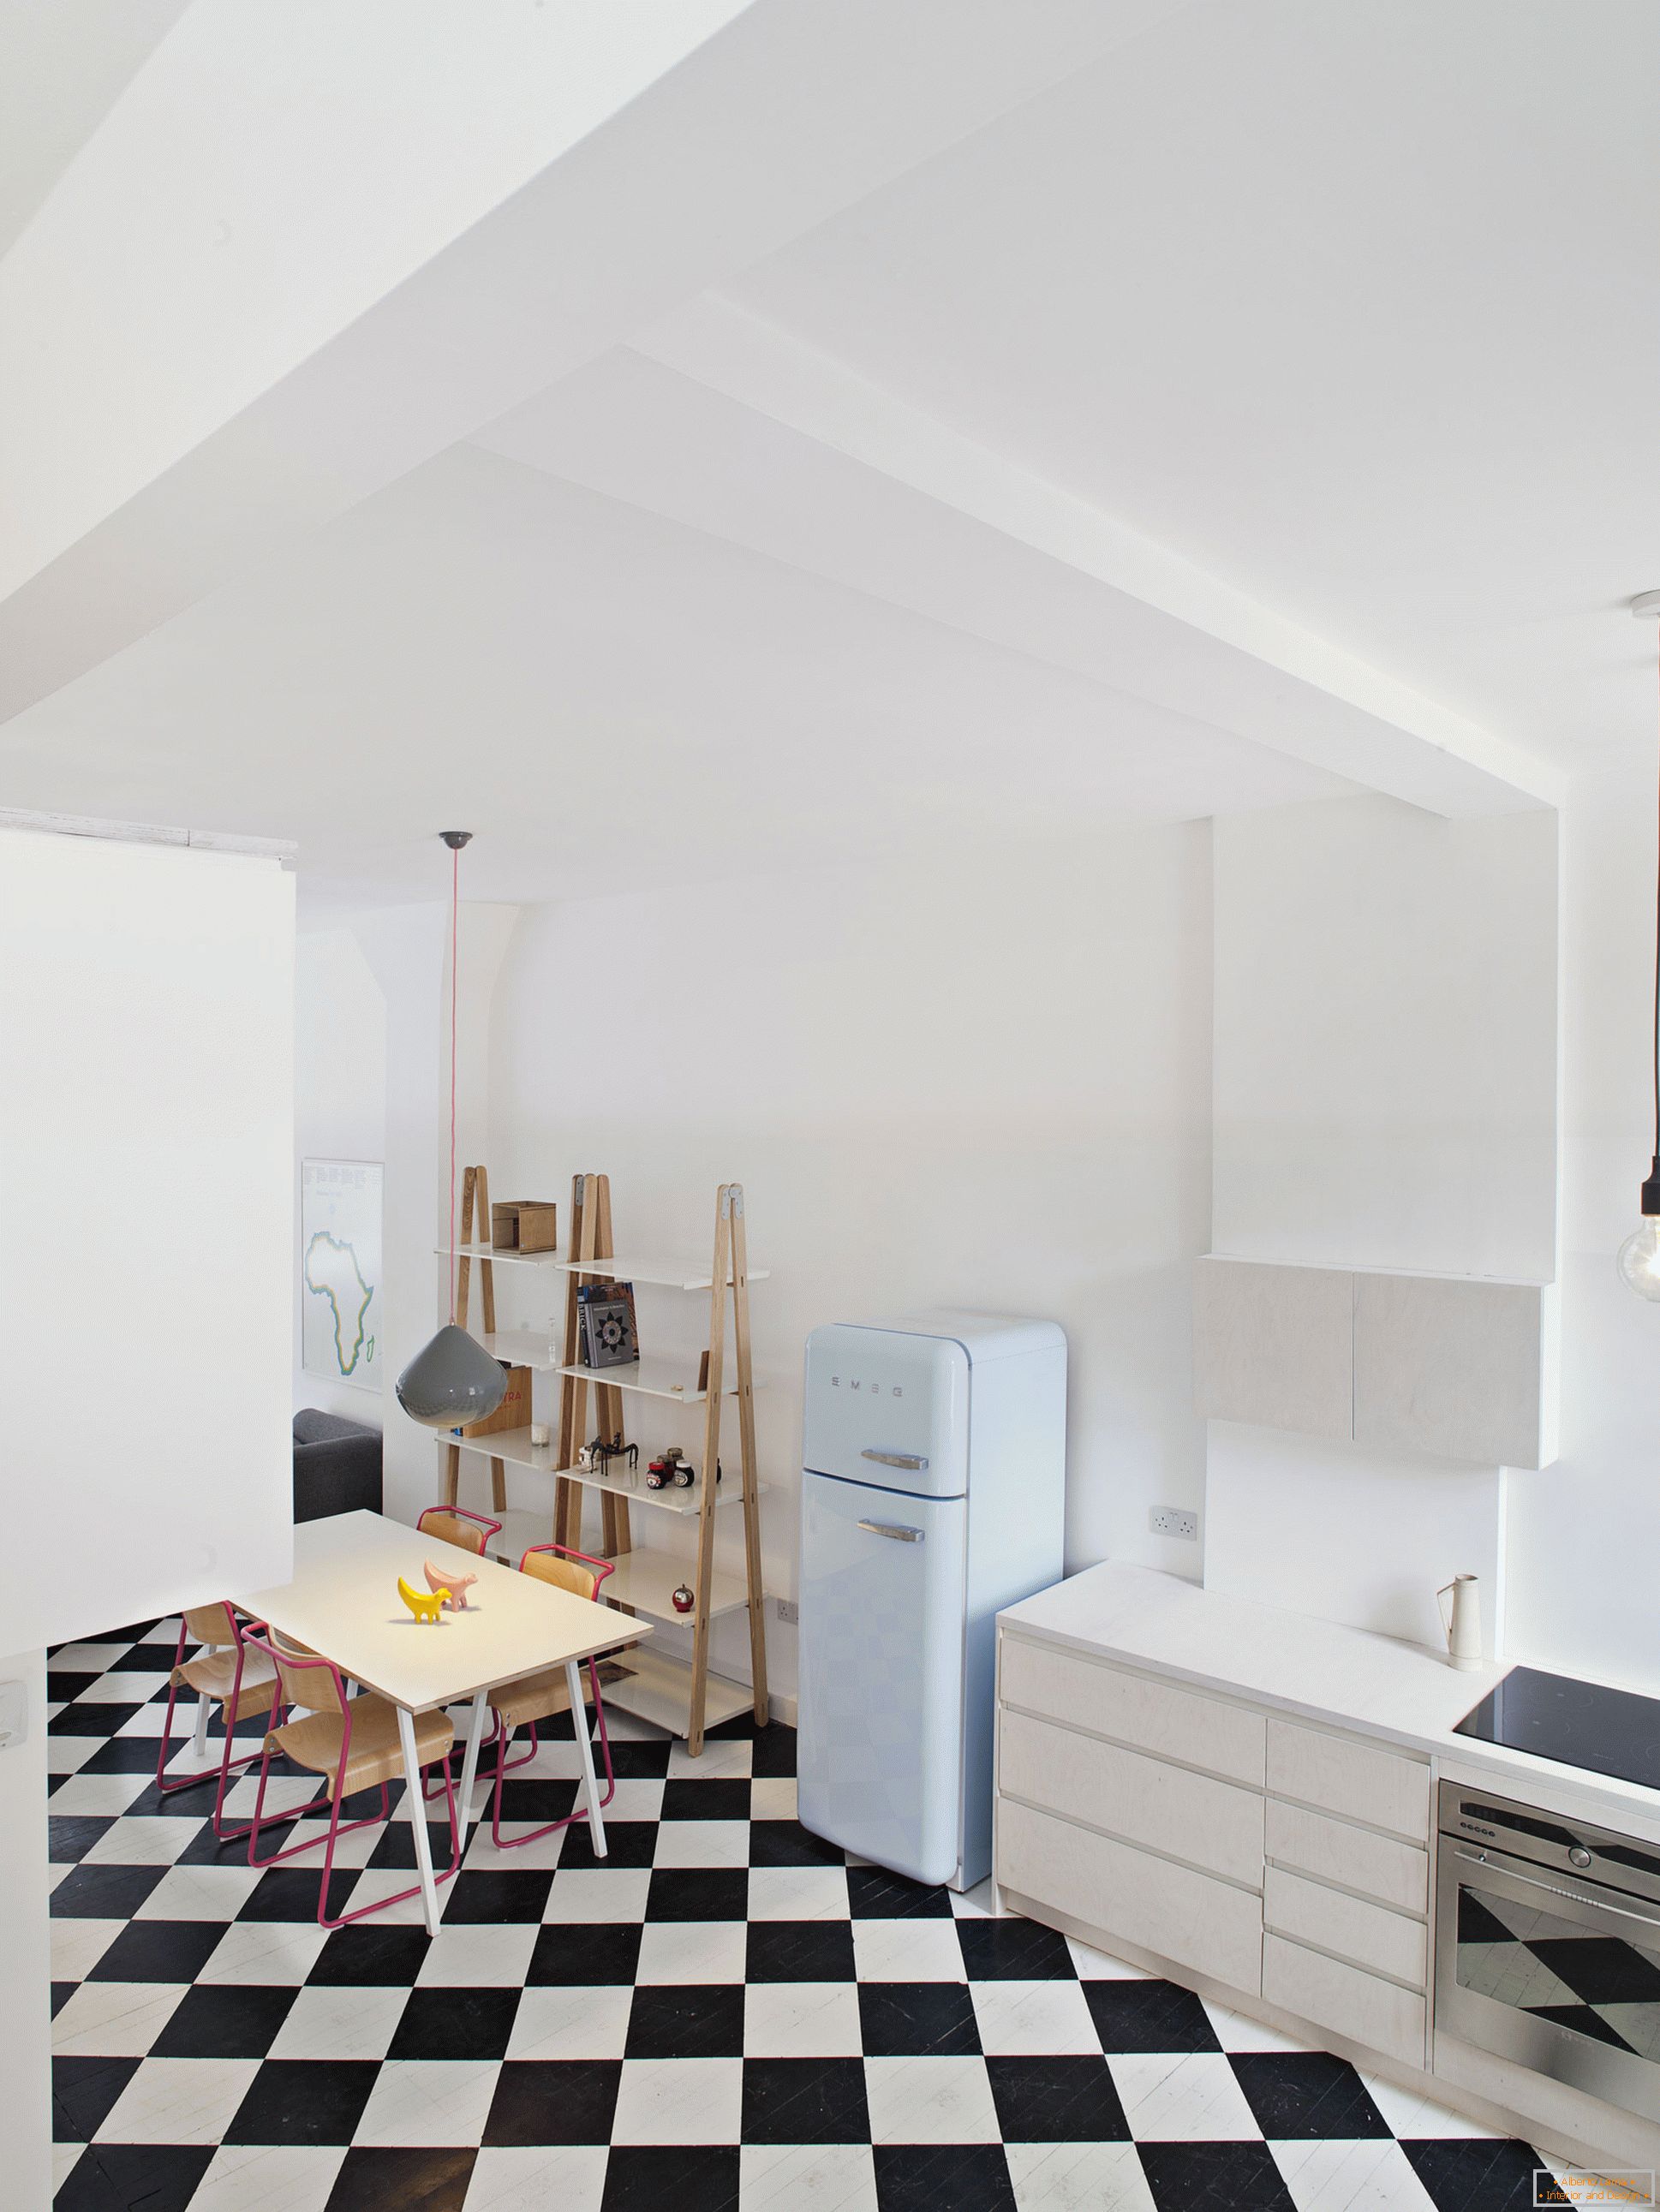 City View House - boulangerie, transformée en studio résidentiel, Londres, Royaume-Uni